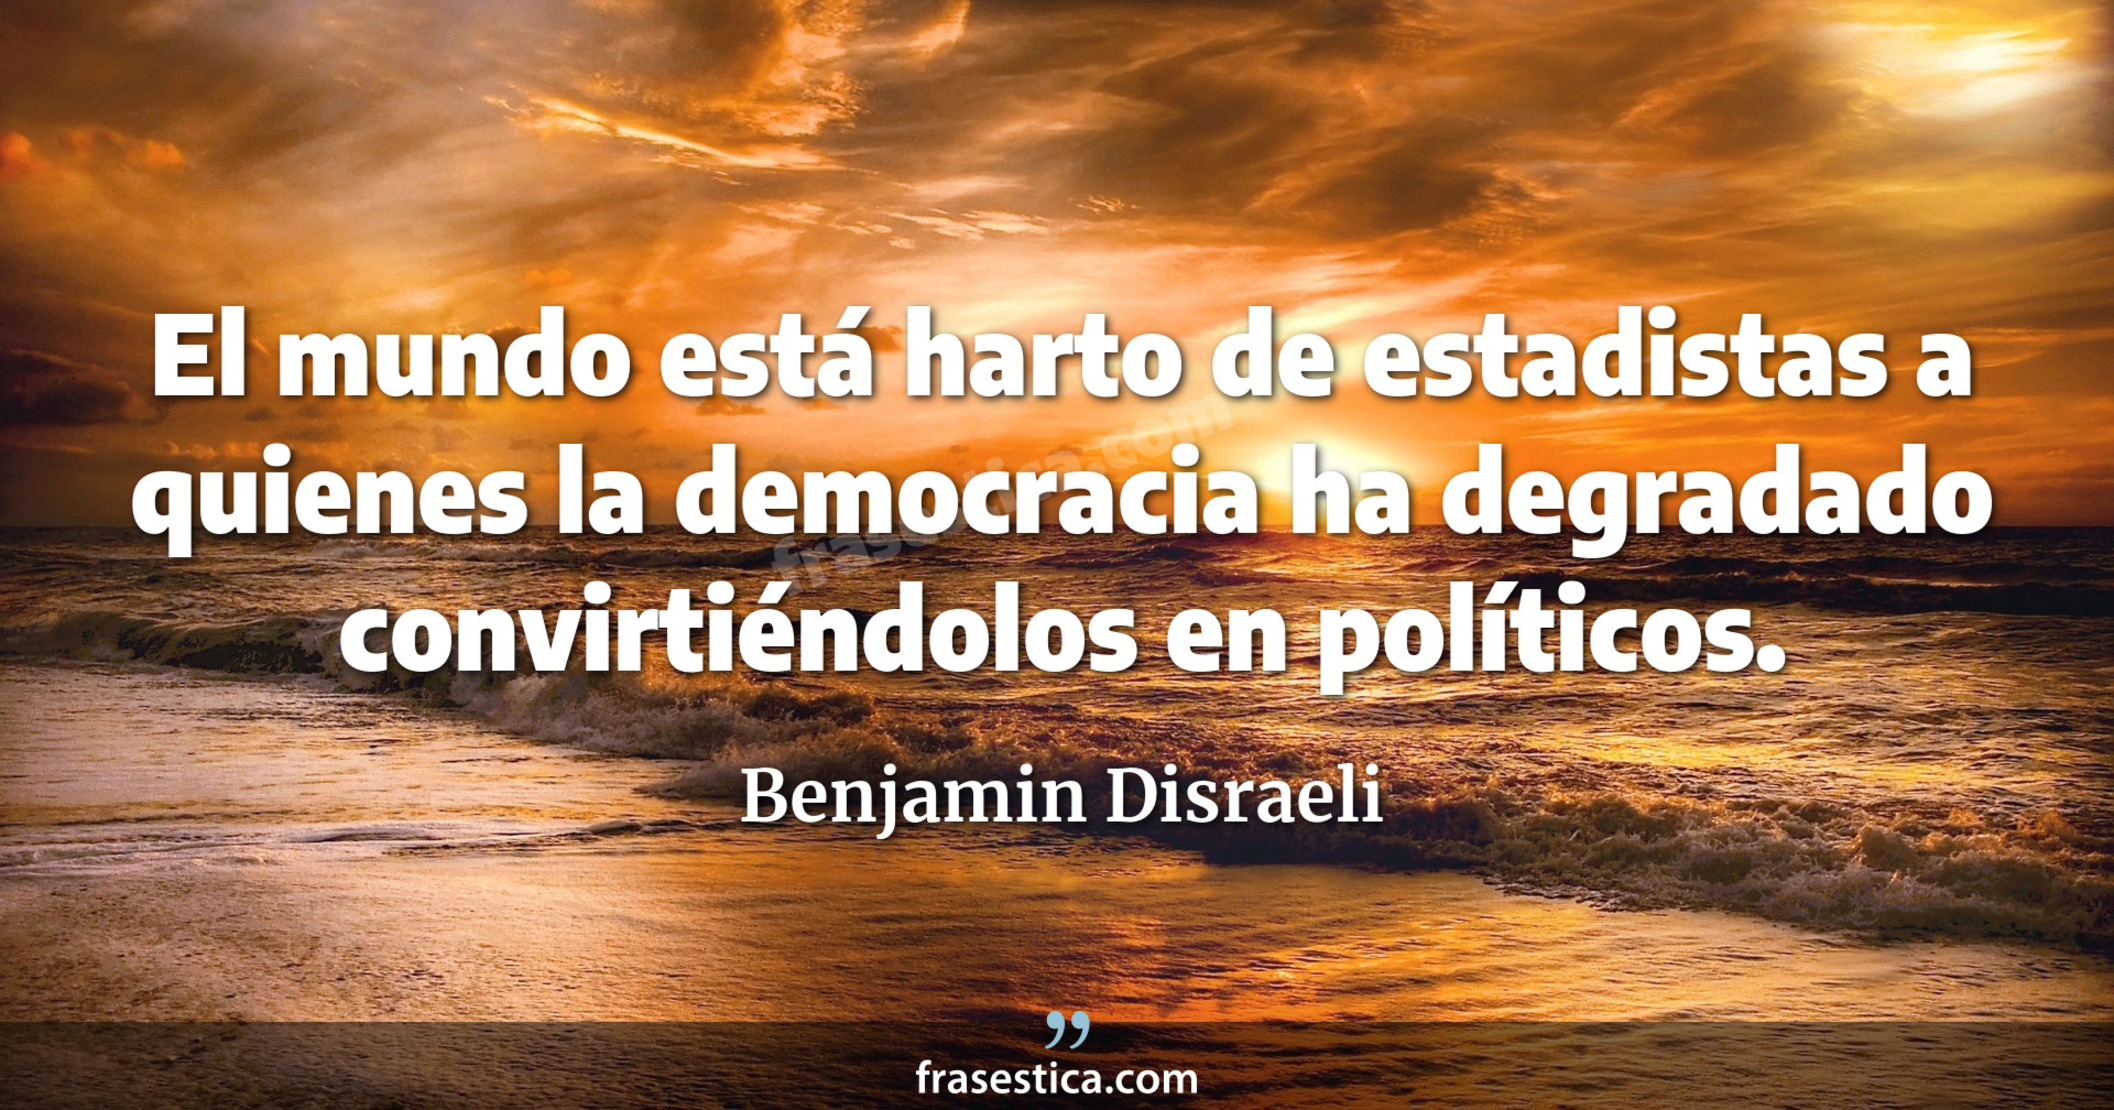 El mundo está harto de estadistas a quienes la democracia ha degradado convirtiéndolos en políticos. - Benjamin Disraeli